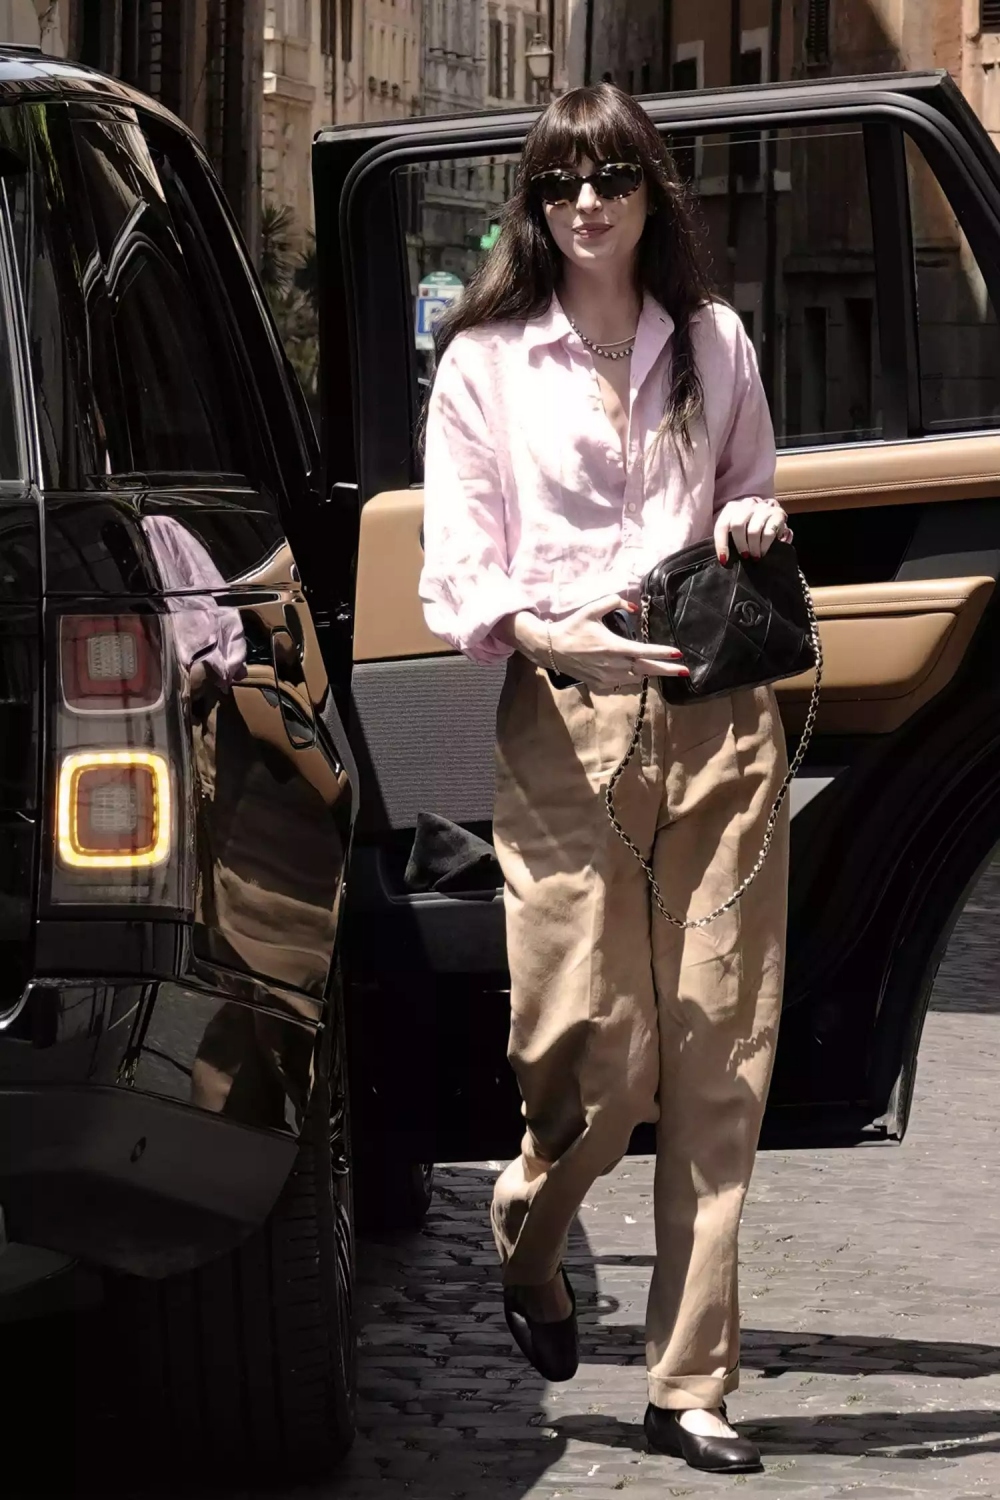 Một trong những phong cách đường phố nổi bật gần đây nhất của Dakota Johnson là sự theo đuổi của xu hướng thời trang Quiet Luxury. Nữ diễn viên kết hợp quần lửng màu nâu với áo sơ mi màu hồng nhạt và giày bệt màu đen tiện dụng, đồng thời kết hợp phụ kiện đơn giản như túi đeo chéo Chanel và kính râm đen.